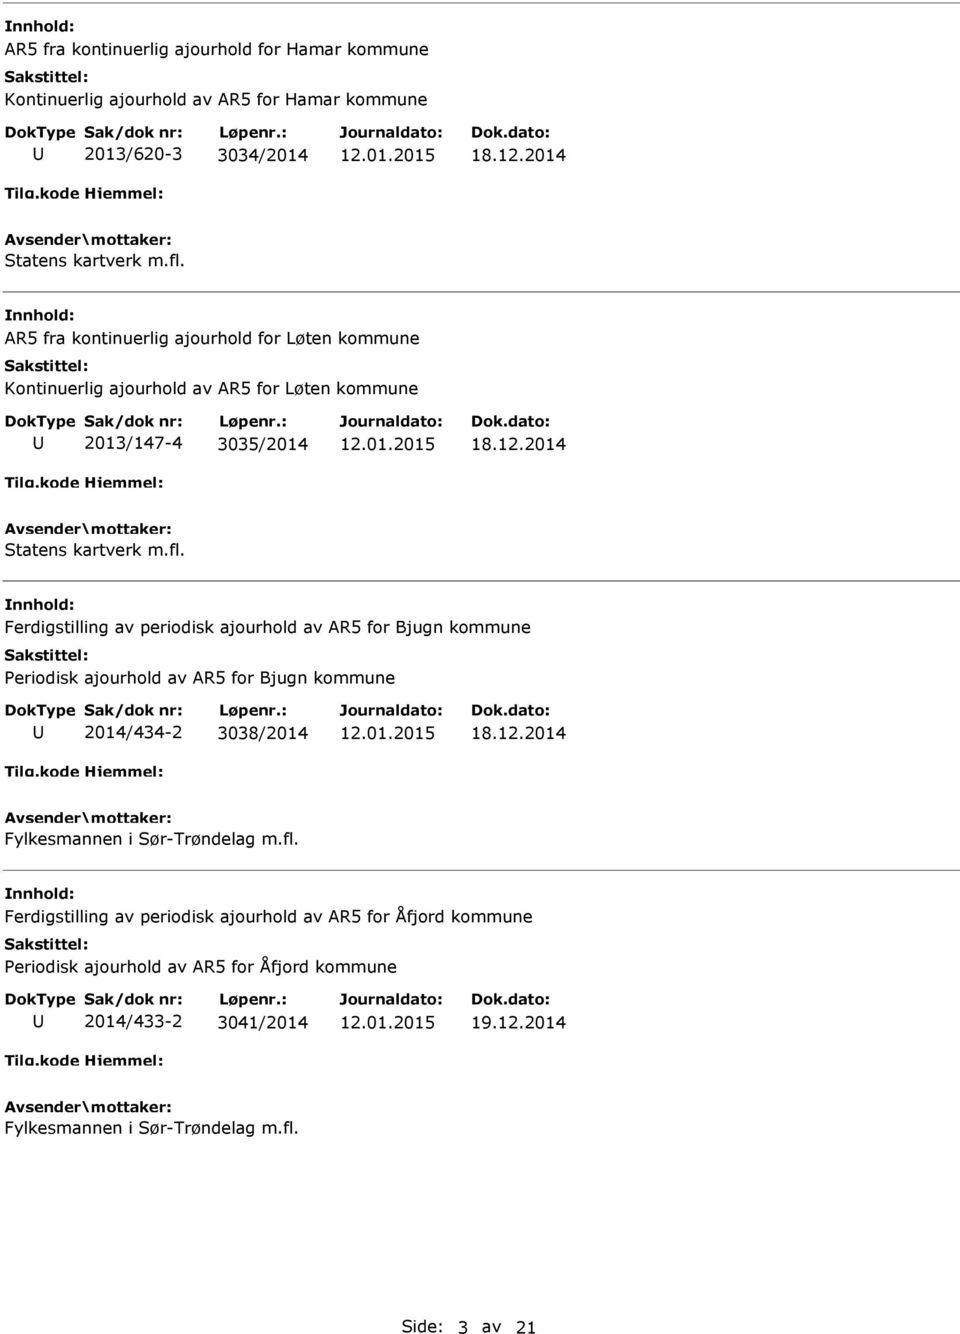 Ferdigstilling av periodisk ajourhold av AR5 for Bjugn kommune Periodisk ajourhold av AR5 for Bjugn kommune 2014/434-2 3038/2014 18.12.